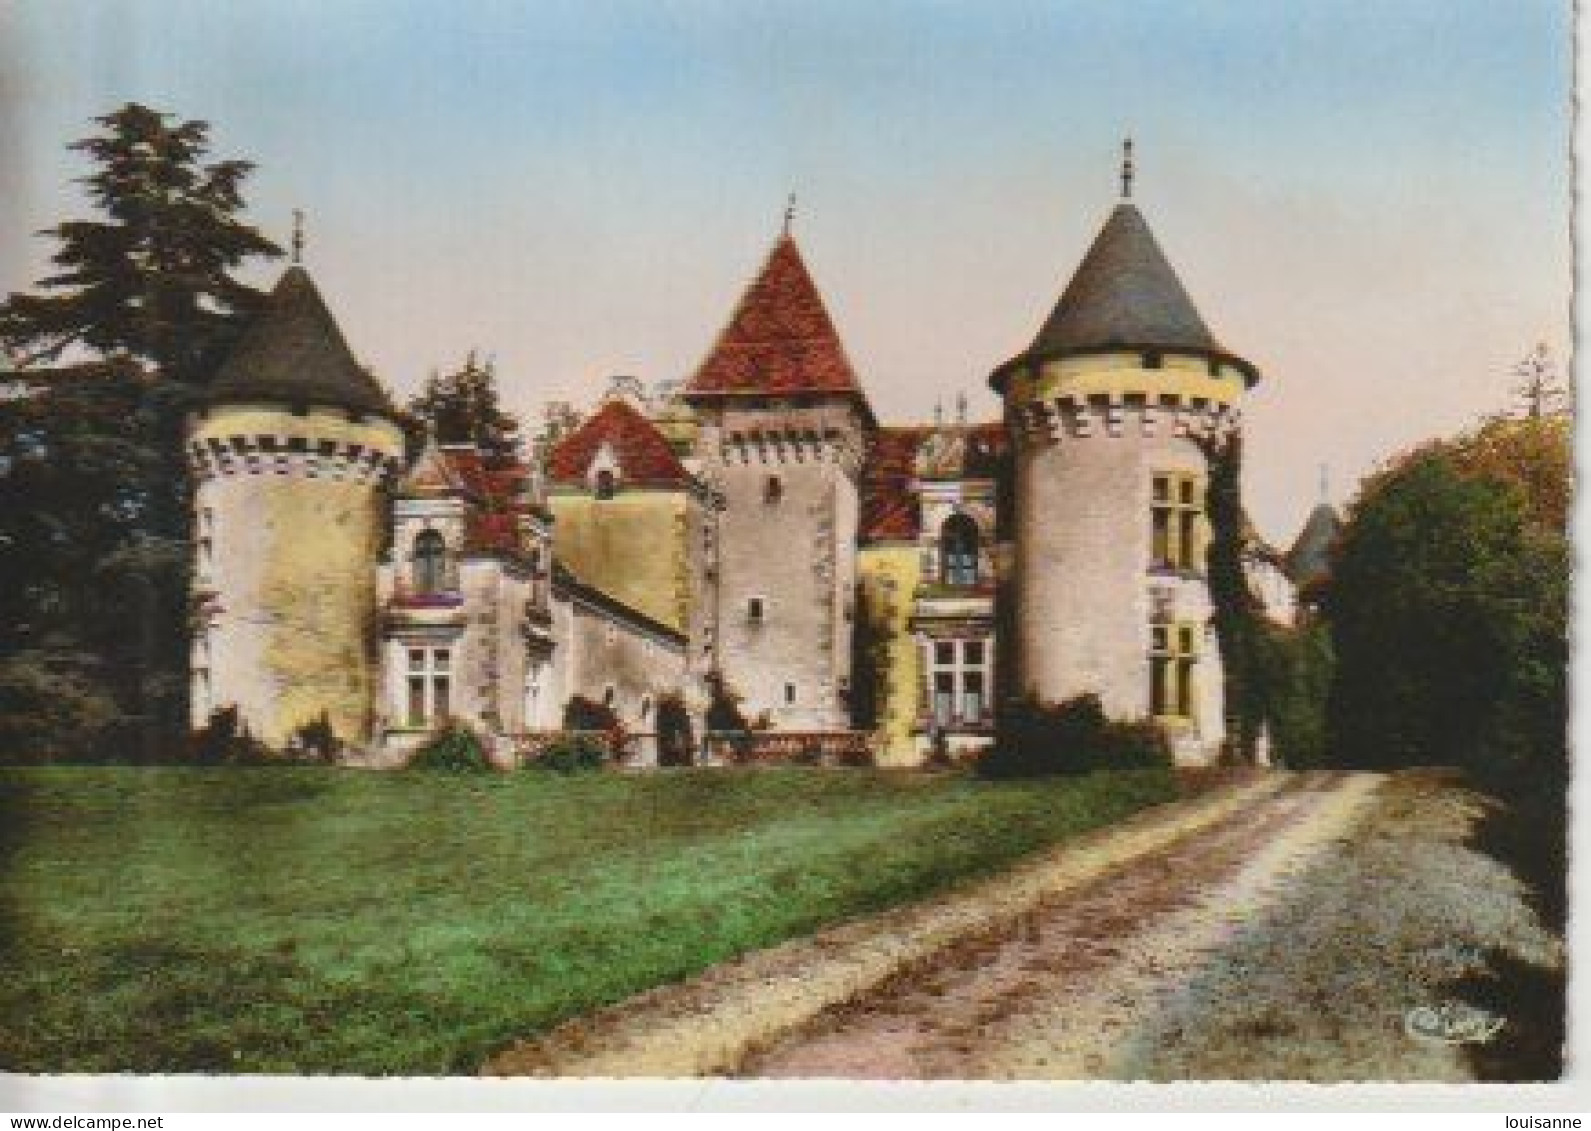 THIVIERS  (  24 )  CHÂTEAU  DE  FILOLIE   -  C P M   (24 /3 /  163  ) - Castles